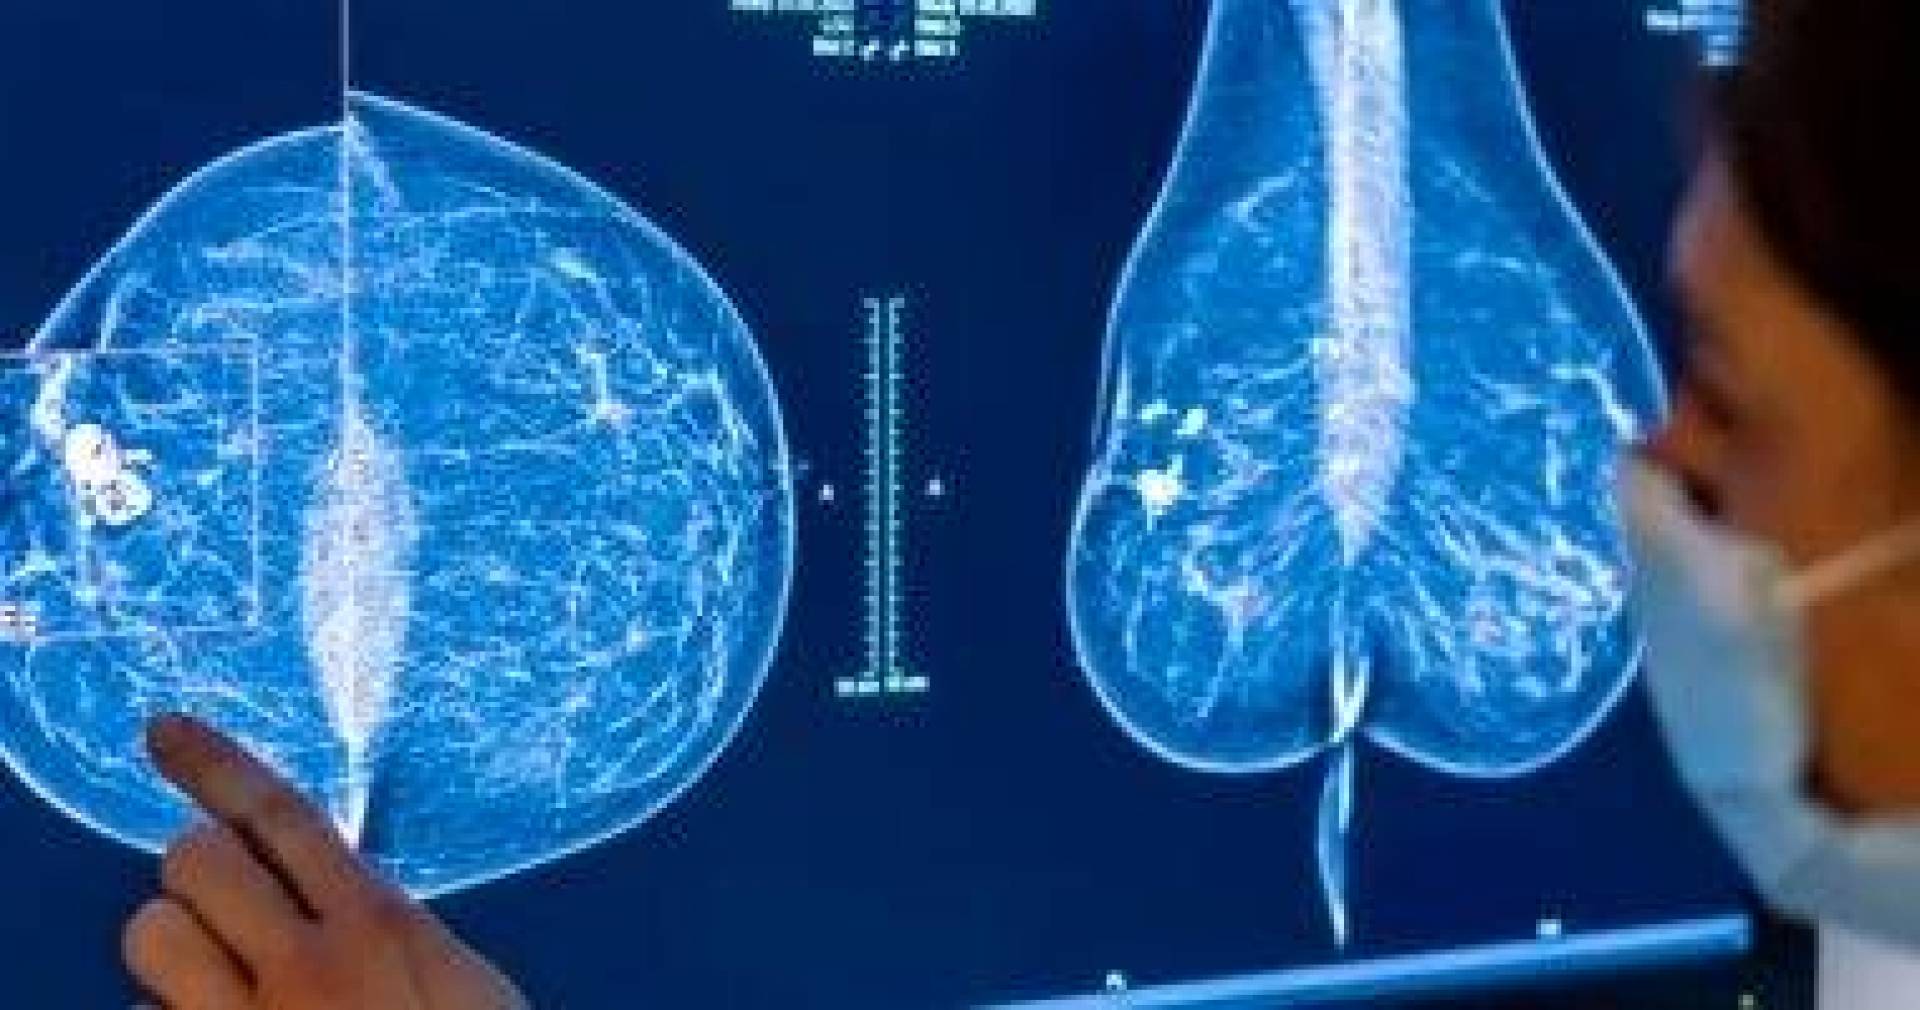 الذكاء الاصطناعي يكشف عن سرطان الثدي بدقة تفوق الأطباء